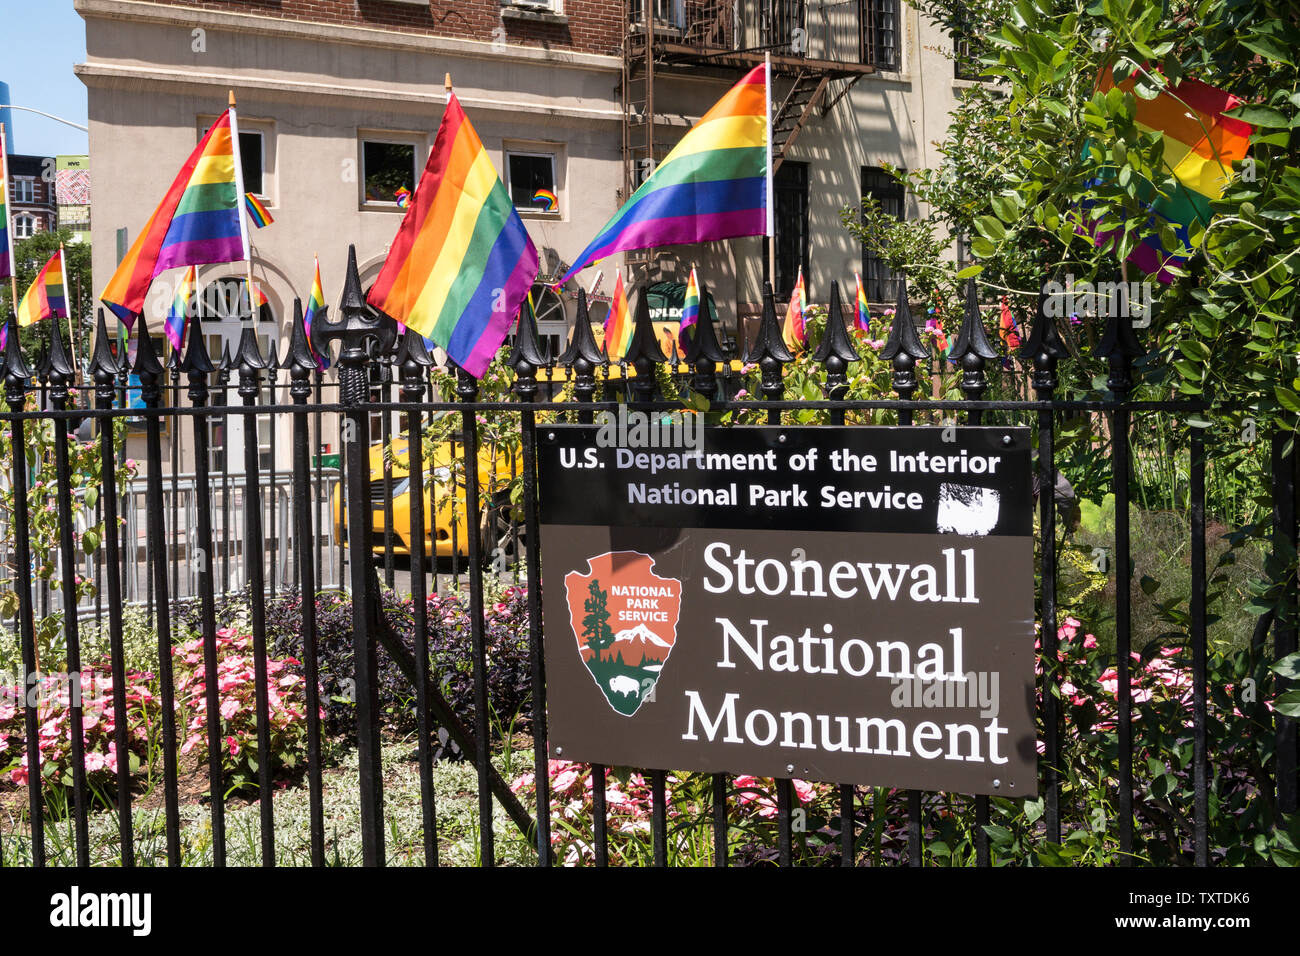 El Stonewall Monumento Nacional se encuentra en Greenwich Village, Nueva York, EE.UU. Foto de stock